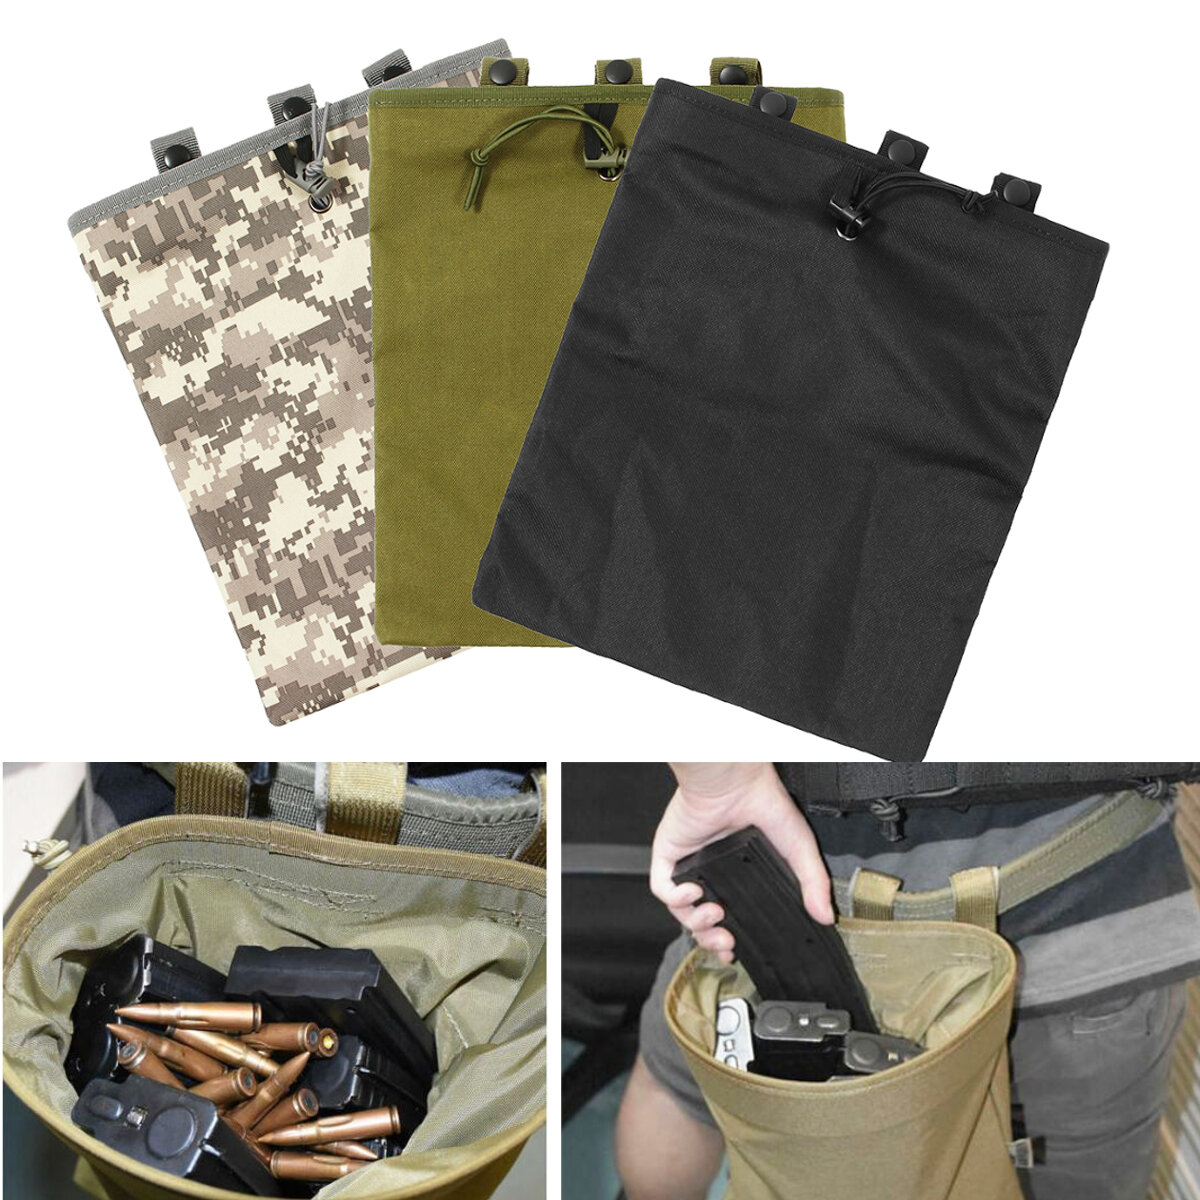 Bolsa táctica de tela Oxford de 30x25 cm con funda para revistas y bolsa de munición para caza y pesca.